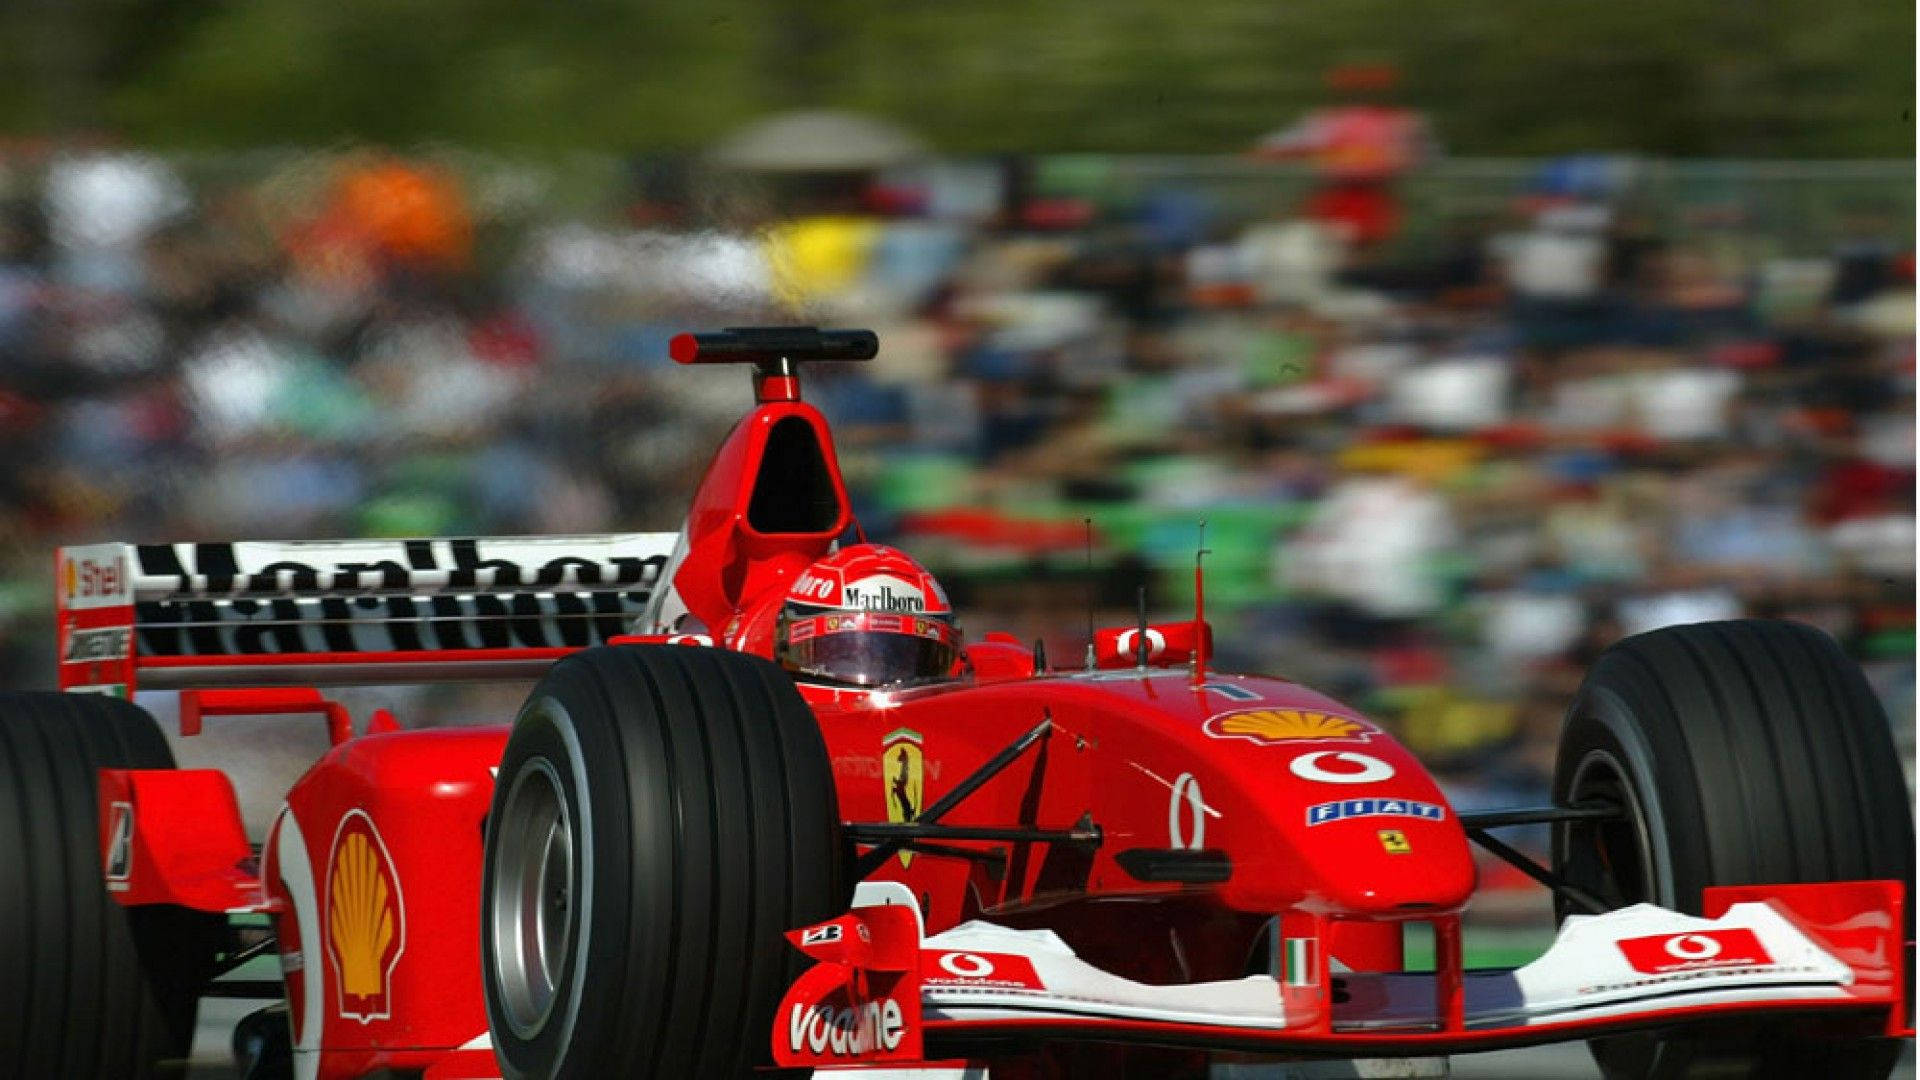 Astounding Racer Michael Schumacher Background